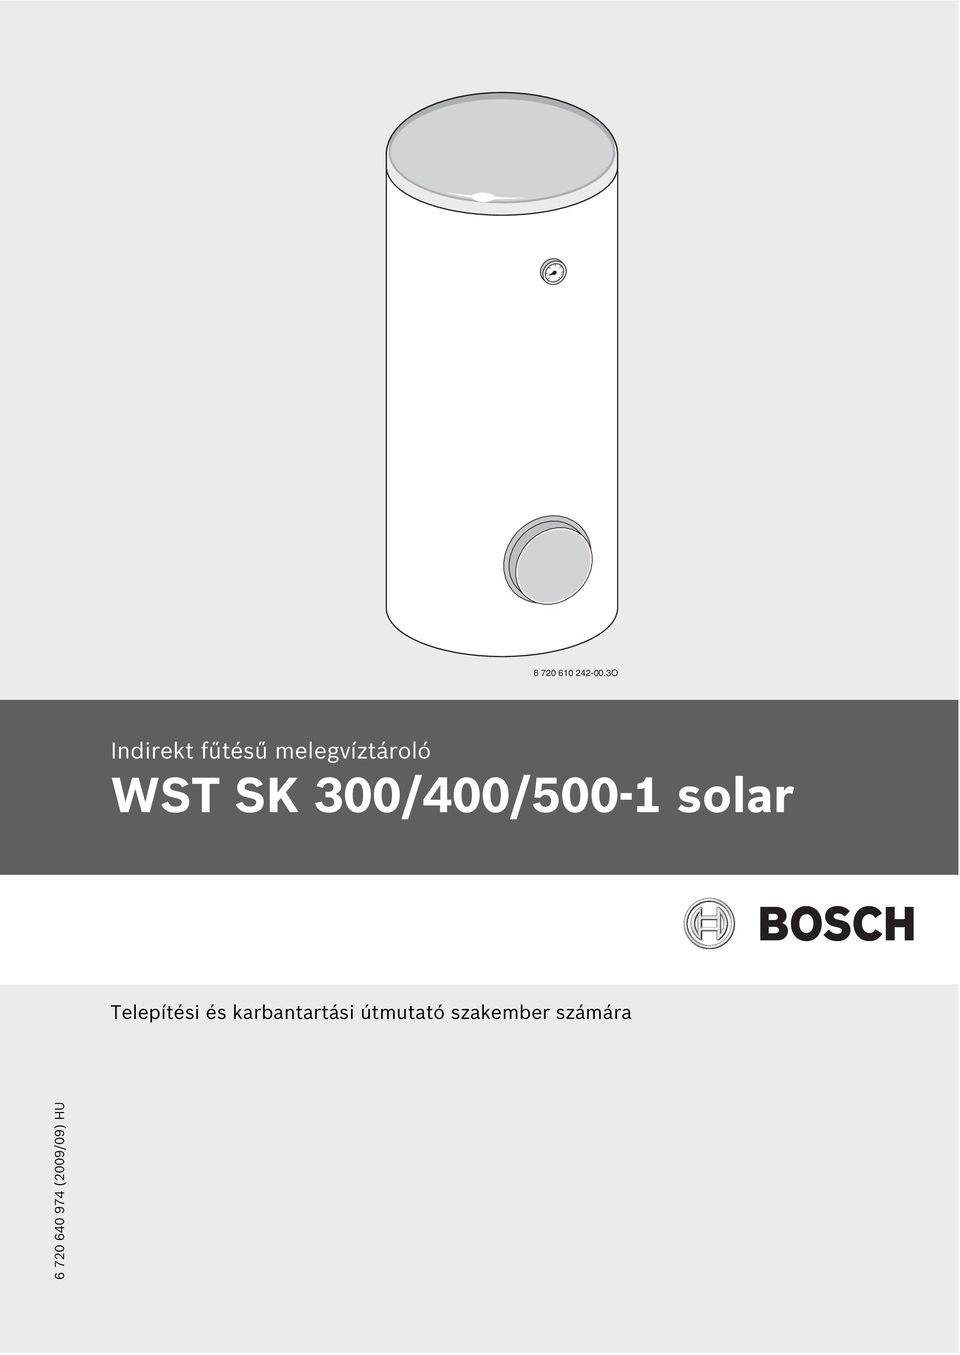 WST SK 300/400/500-1 solar